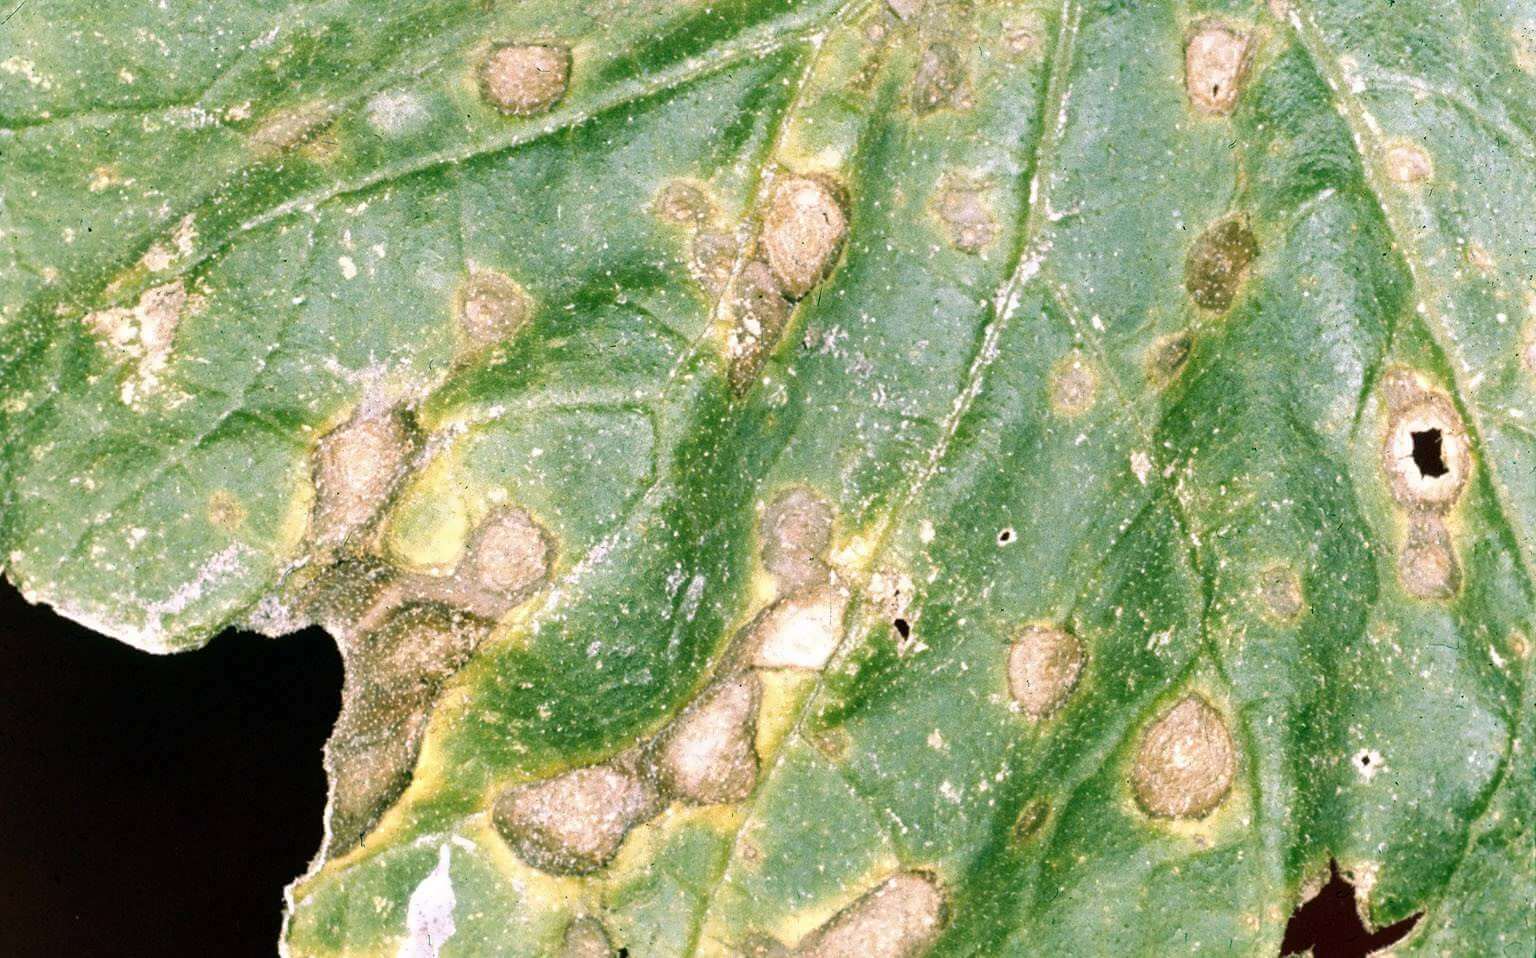 Alternaria cucumerina hastalığının kavun yapraklarında belirtisi